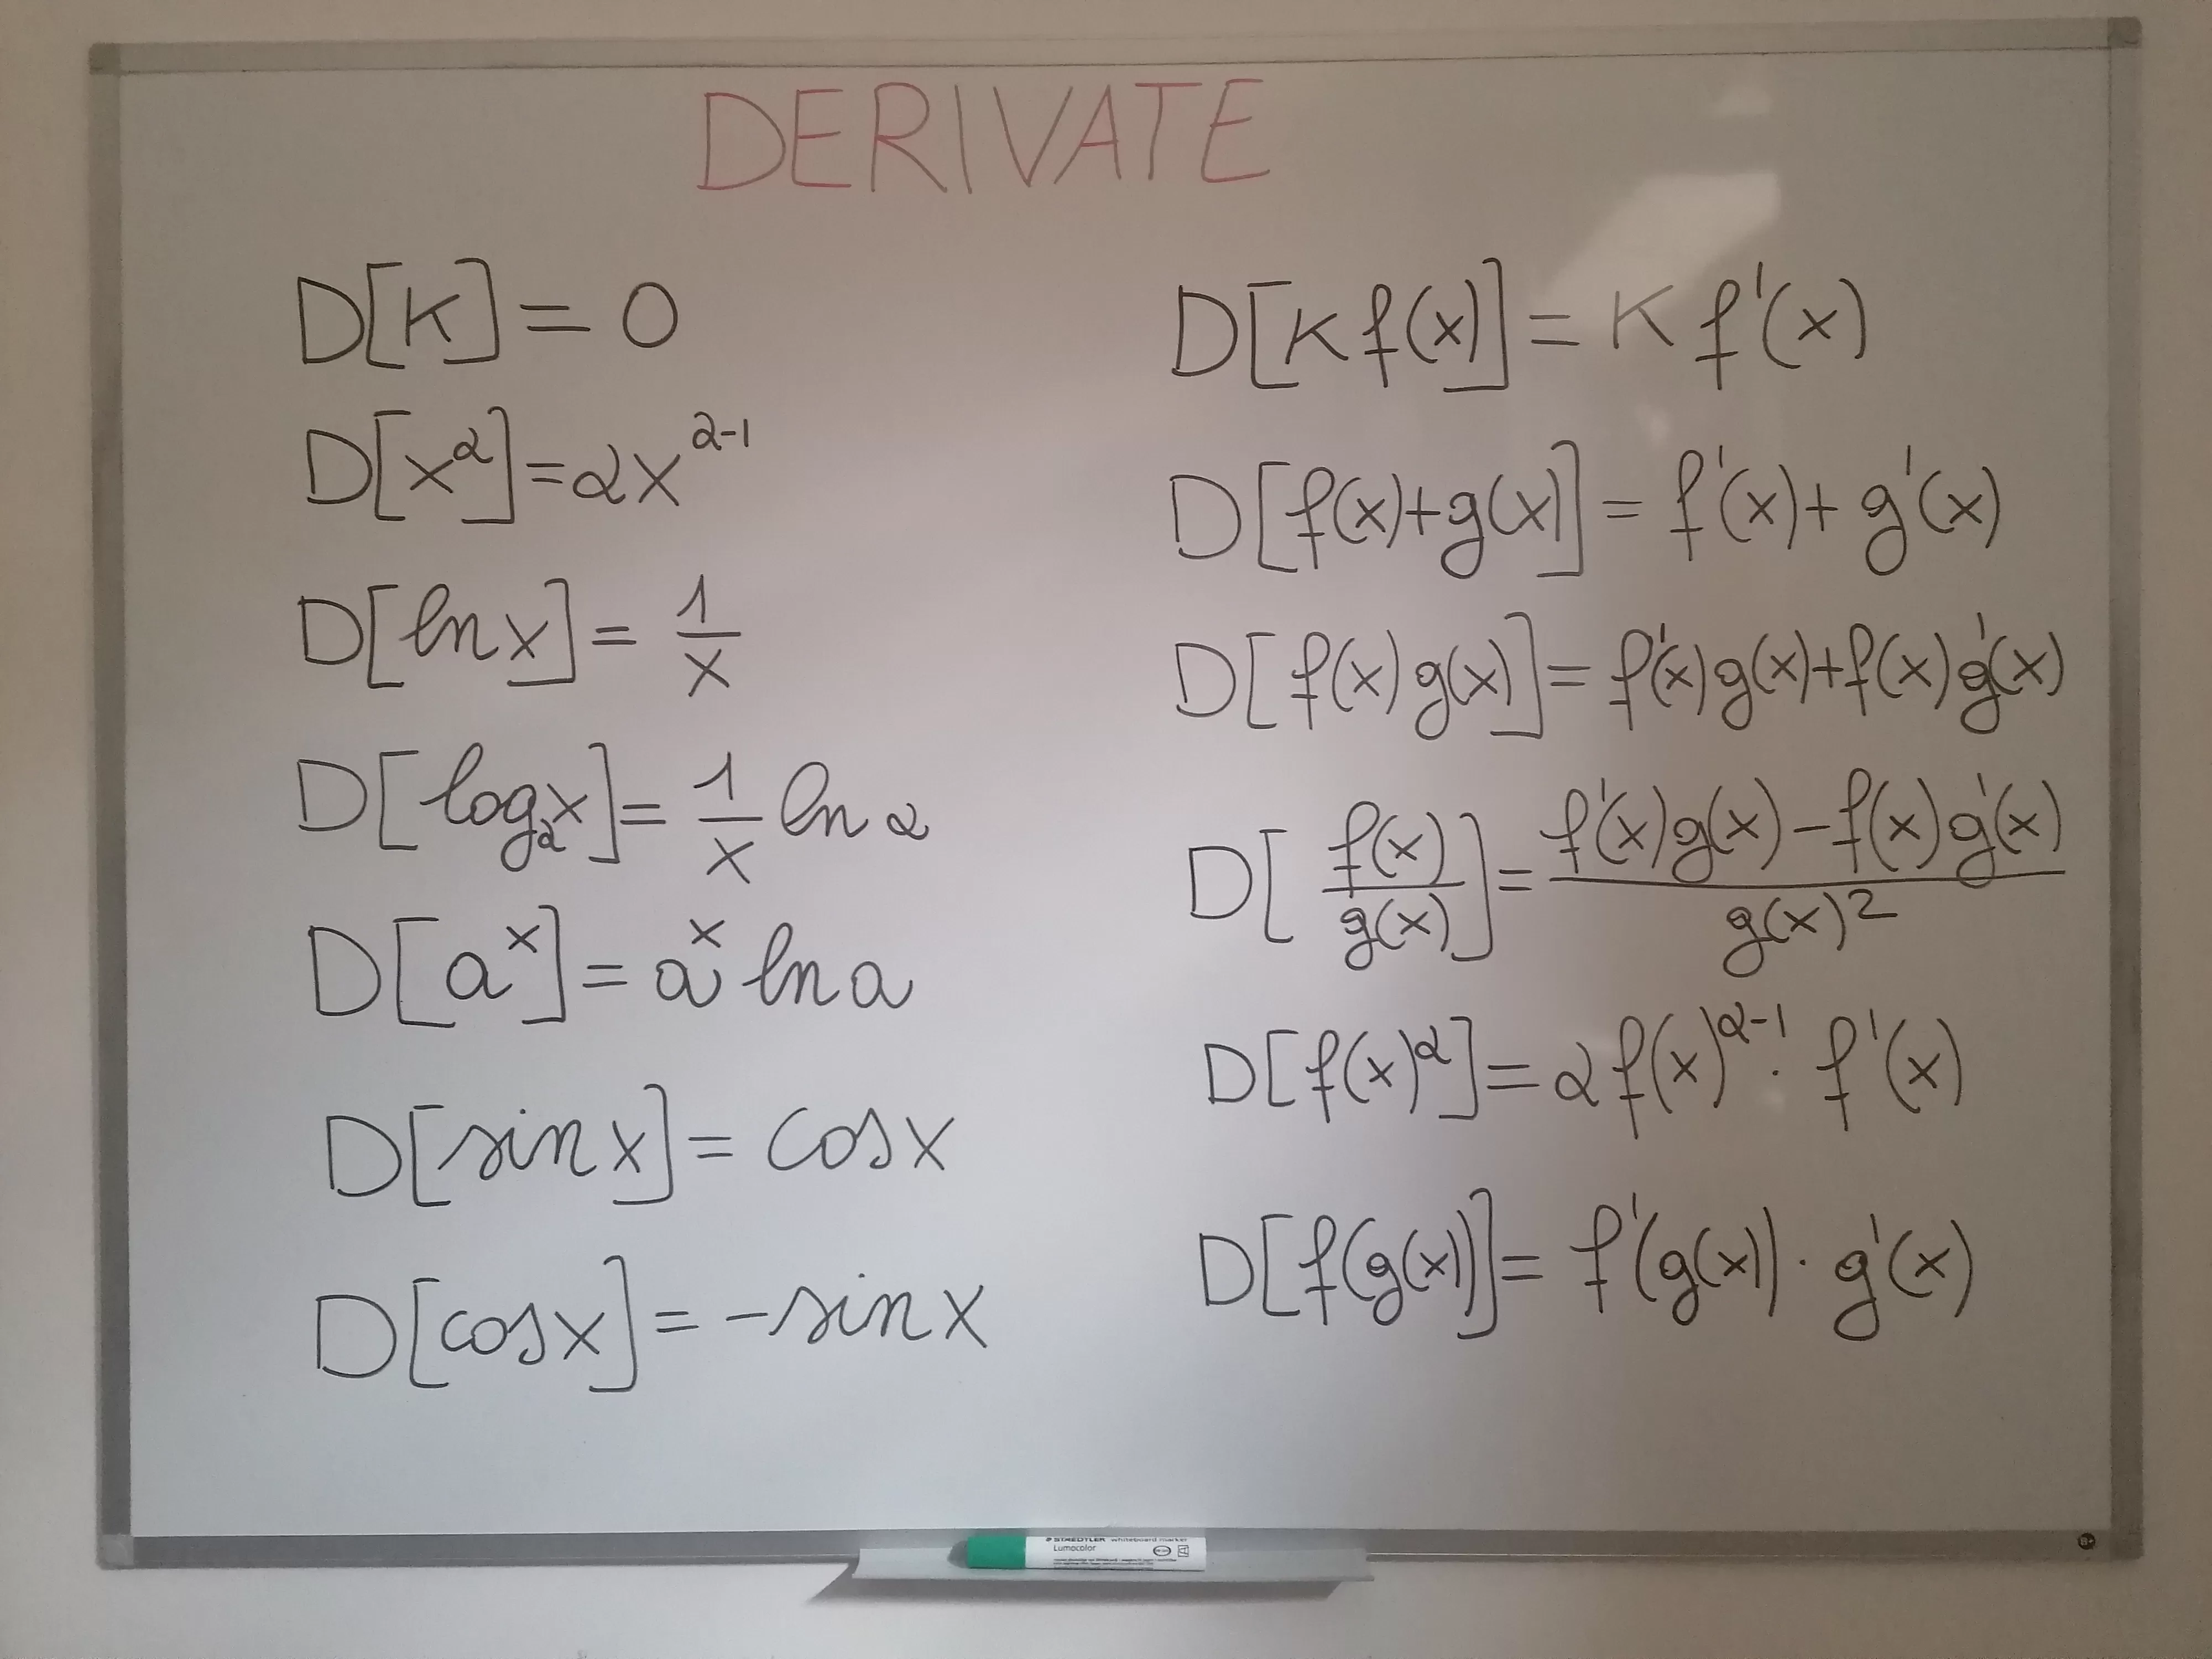 Le derivate